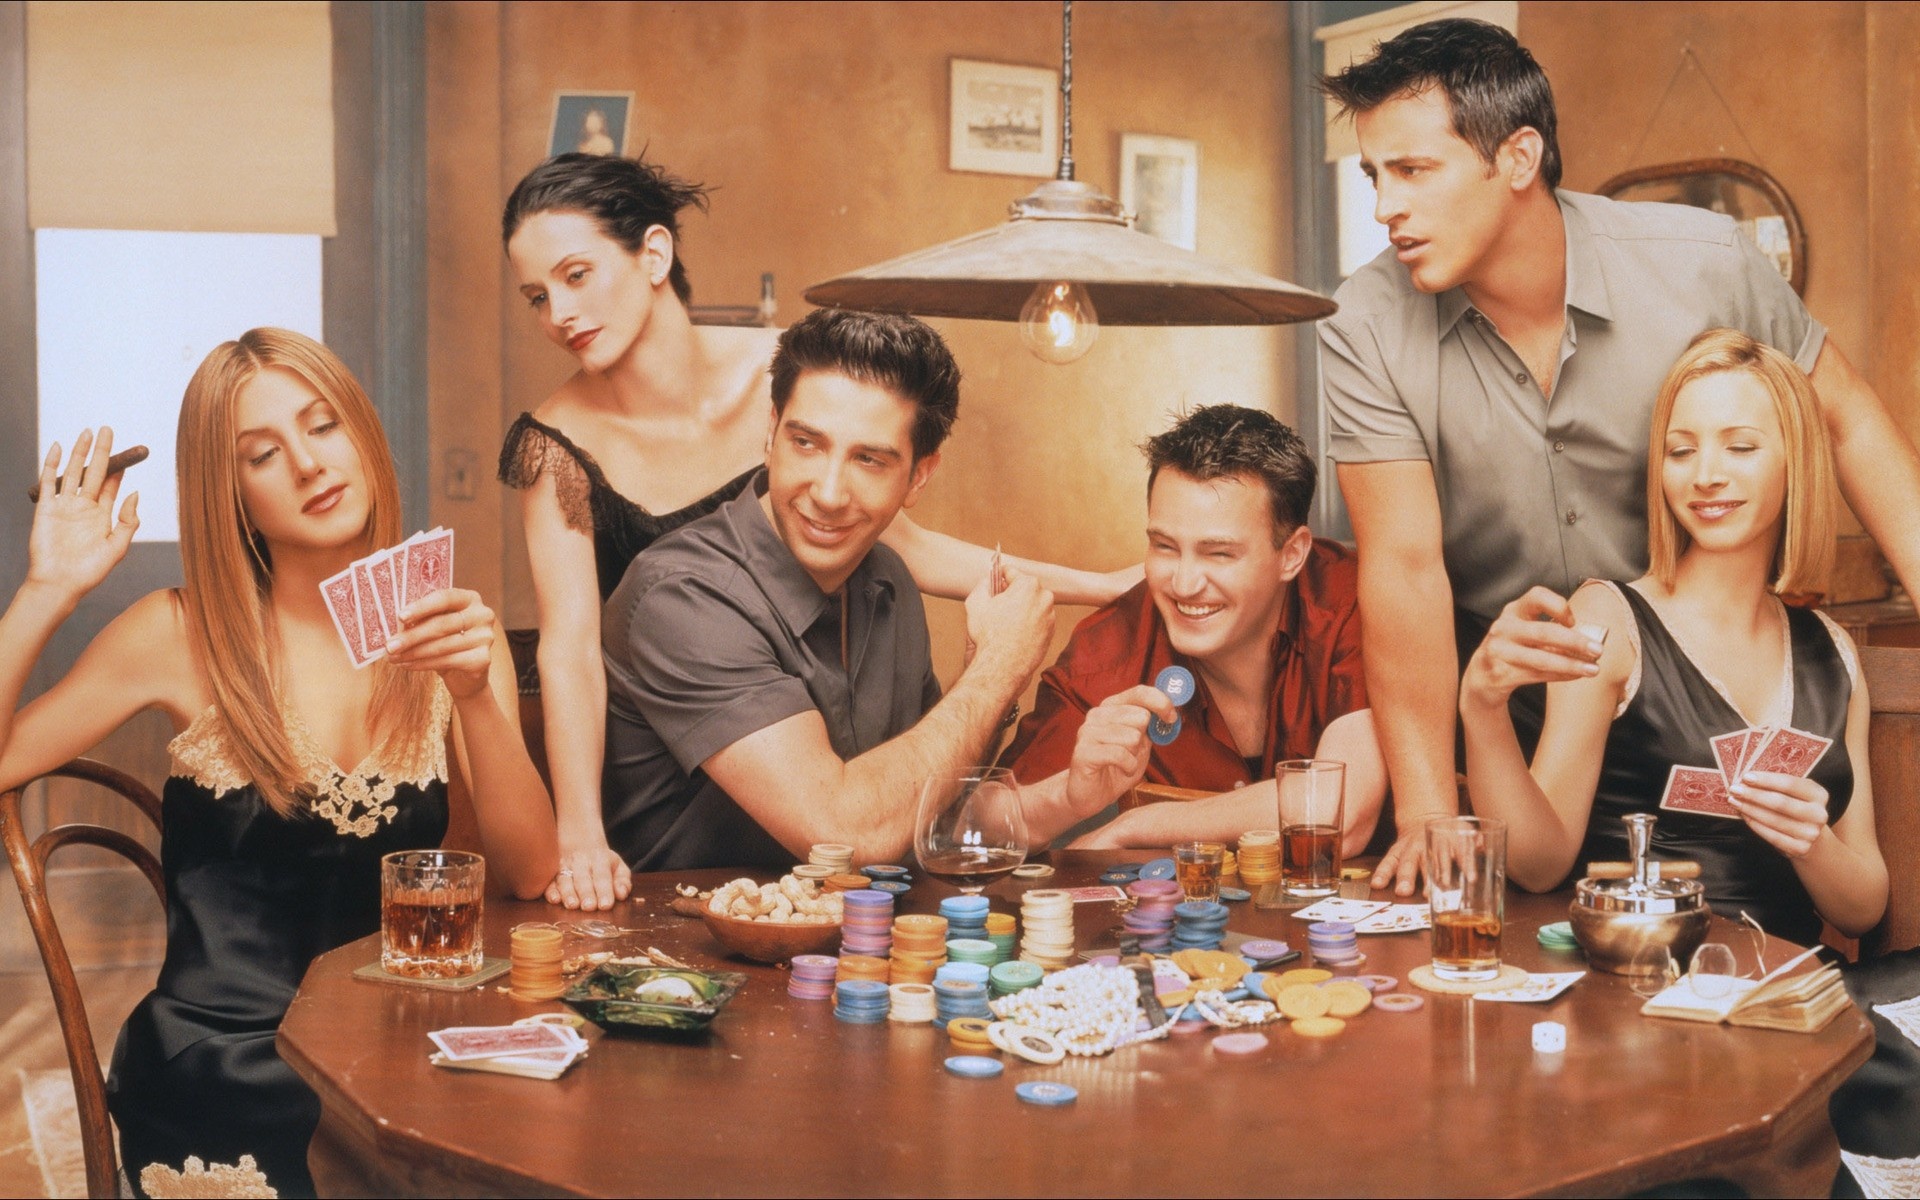 Rachel Green from Friends, Poker scene from Friends, Jennifer Aniston, Friends cast wallpaper, 1920x1200 HD Desktop